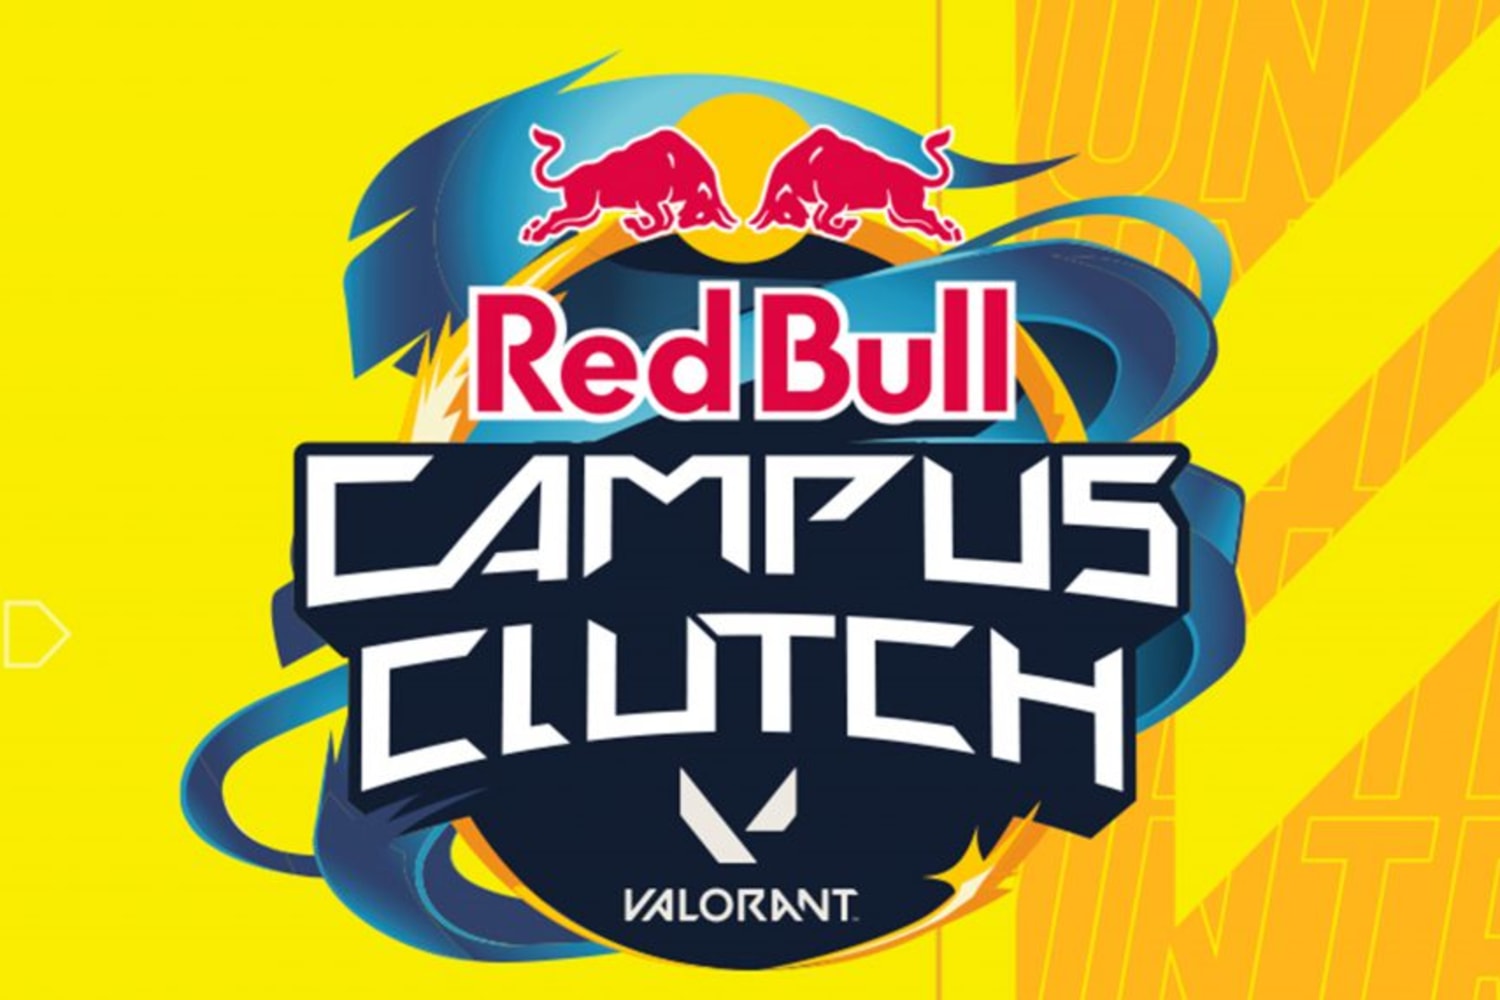 Red Bull Campus Clutch Kuwait